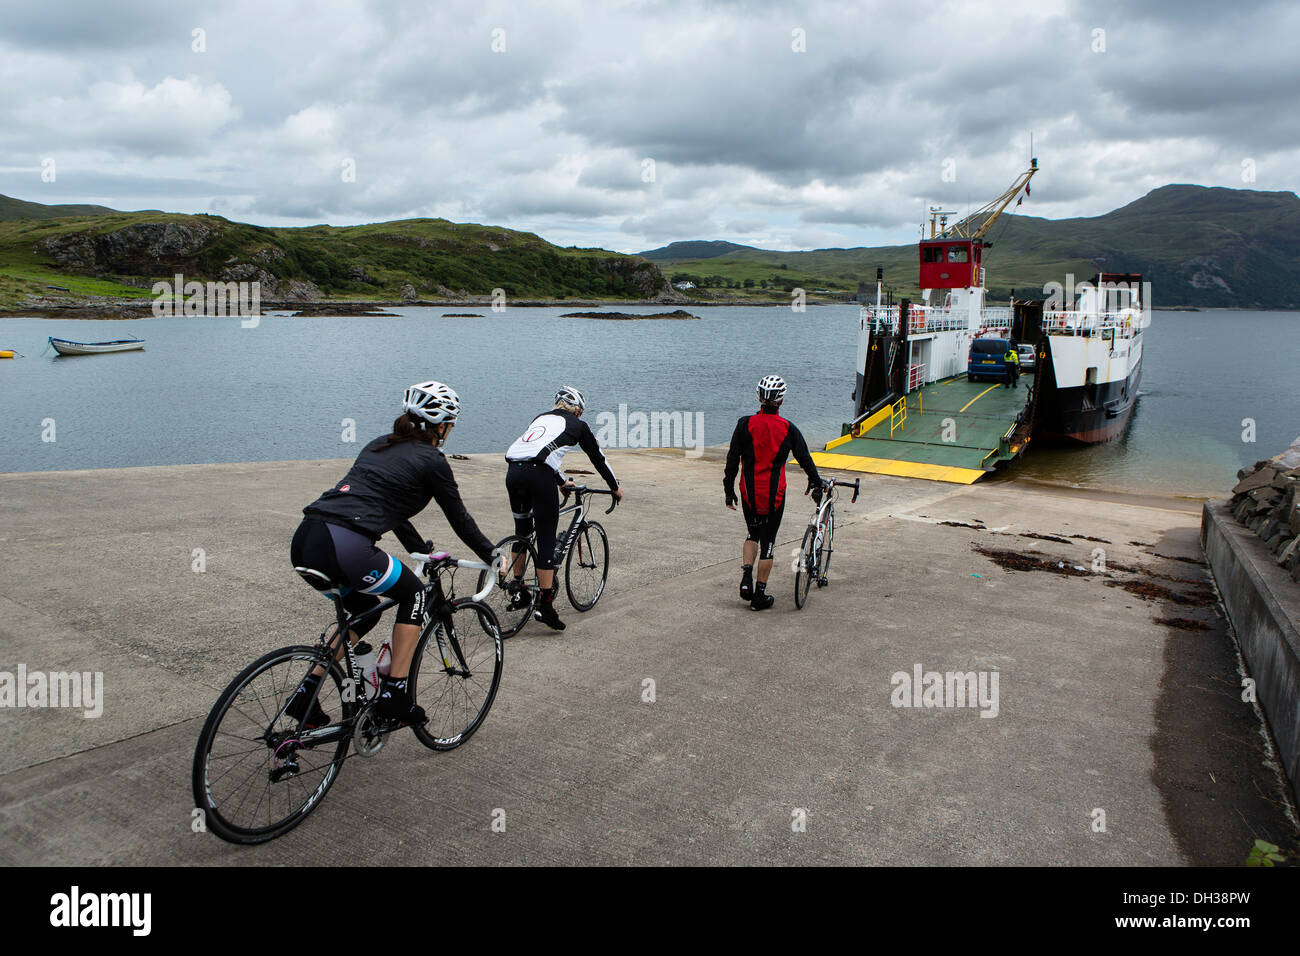 Trois coureurs se préparent à bord d'un ferry dans les Highlands, Ecosse, Royaume-Uni Banque D'Images